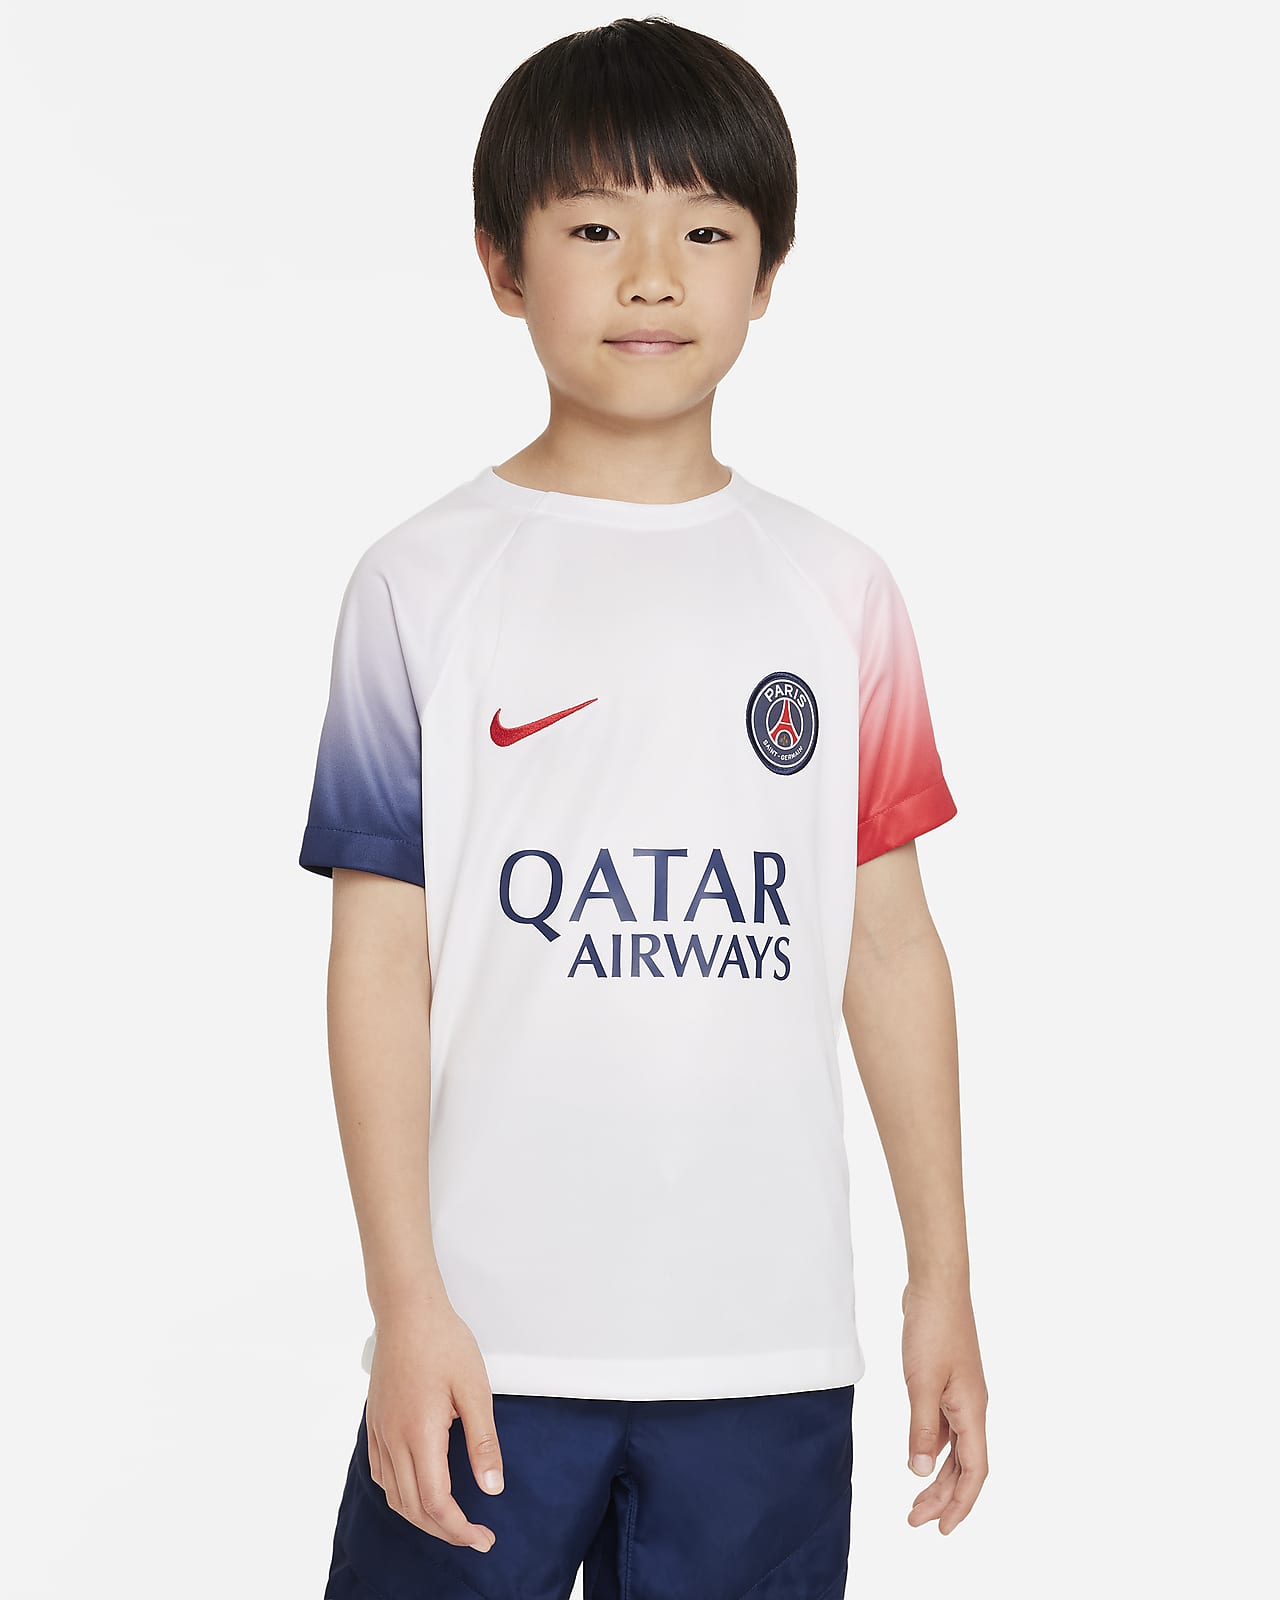 Ποδοσφαιρική μπλούζα προθέρμανσης Nike Dri-FIT εκτός έδρας Παρί Σεν Ζερμέν Academy Pro για μεγάλα παιδιά